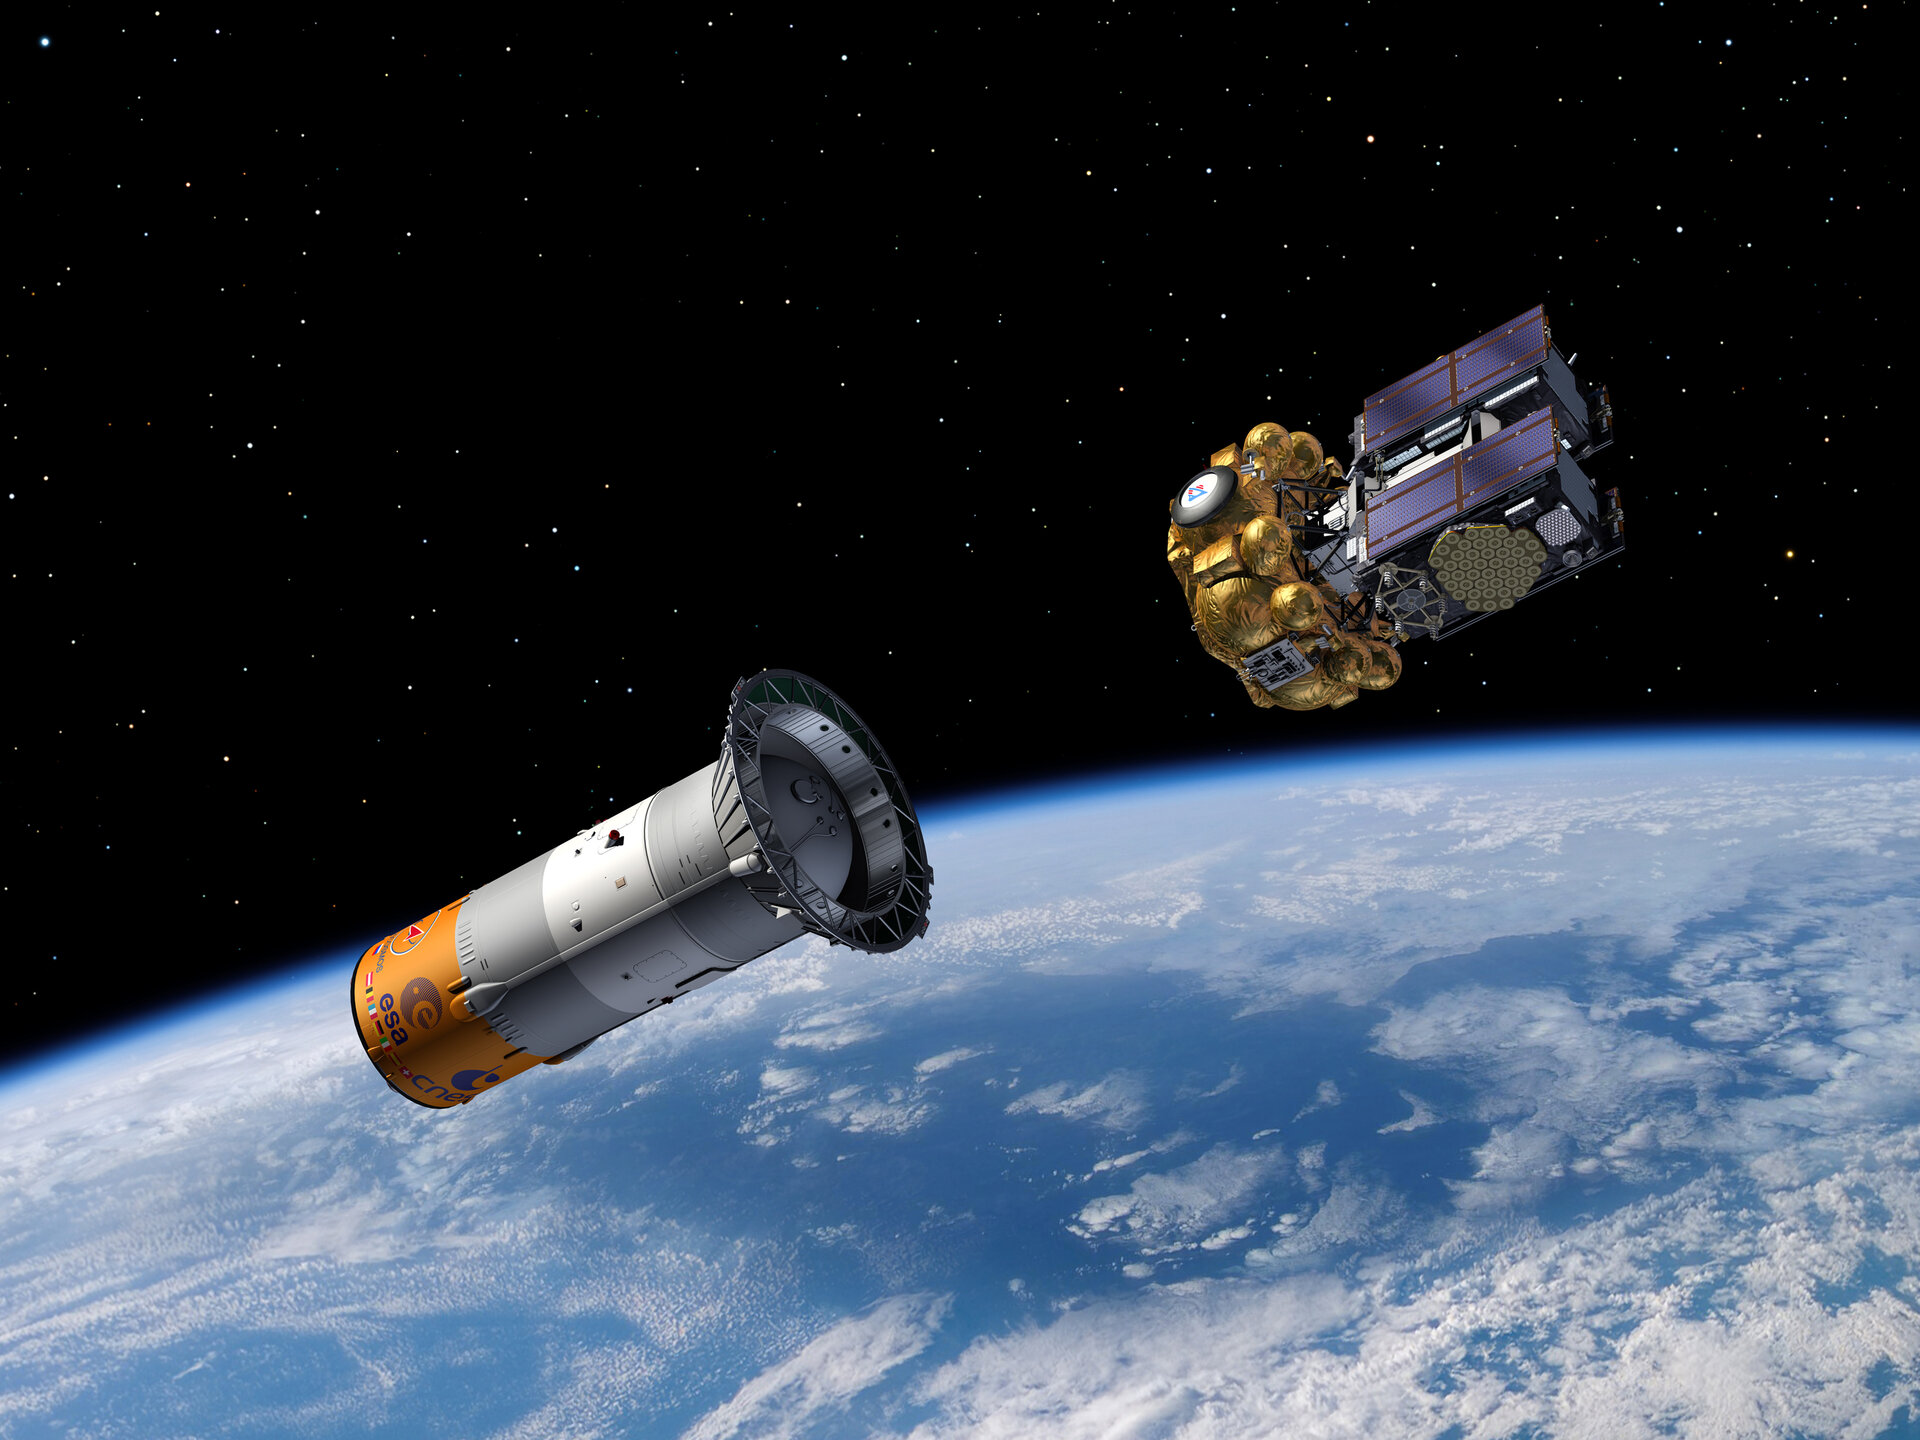 Fregat upper stage separates from Soyuz third stage